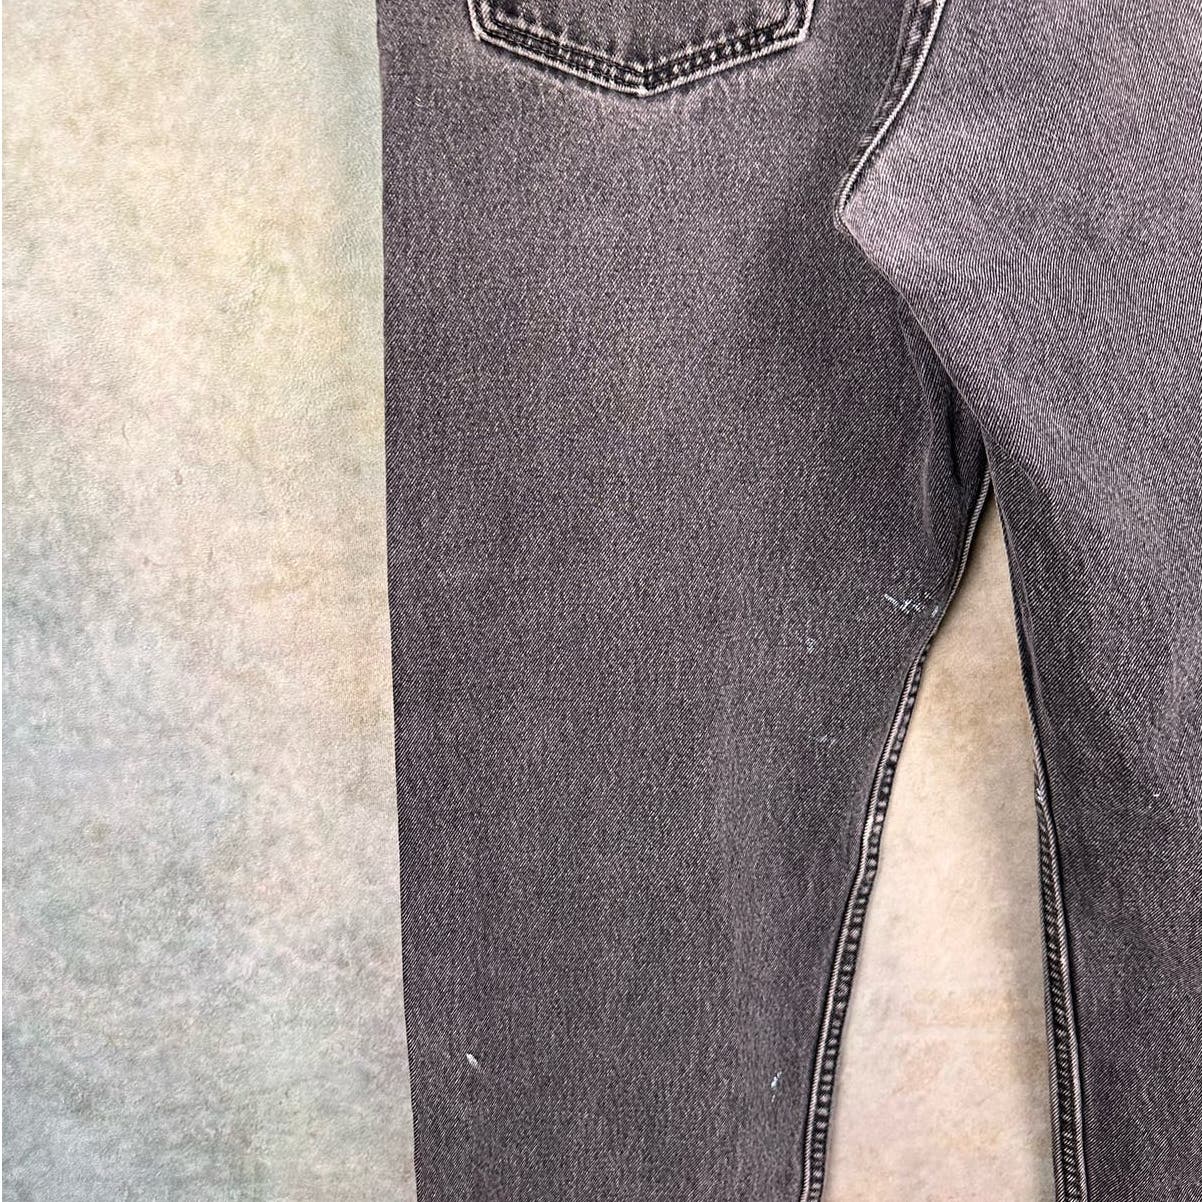 Vintage Levis 550 Denim Jeans Relaxed Fit 34x32